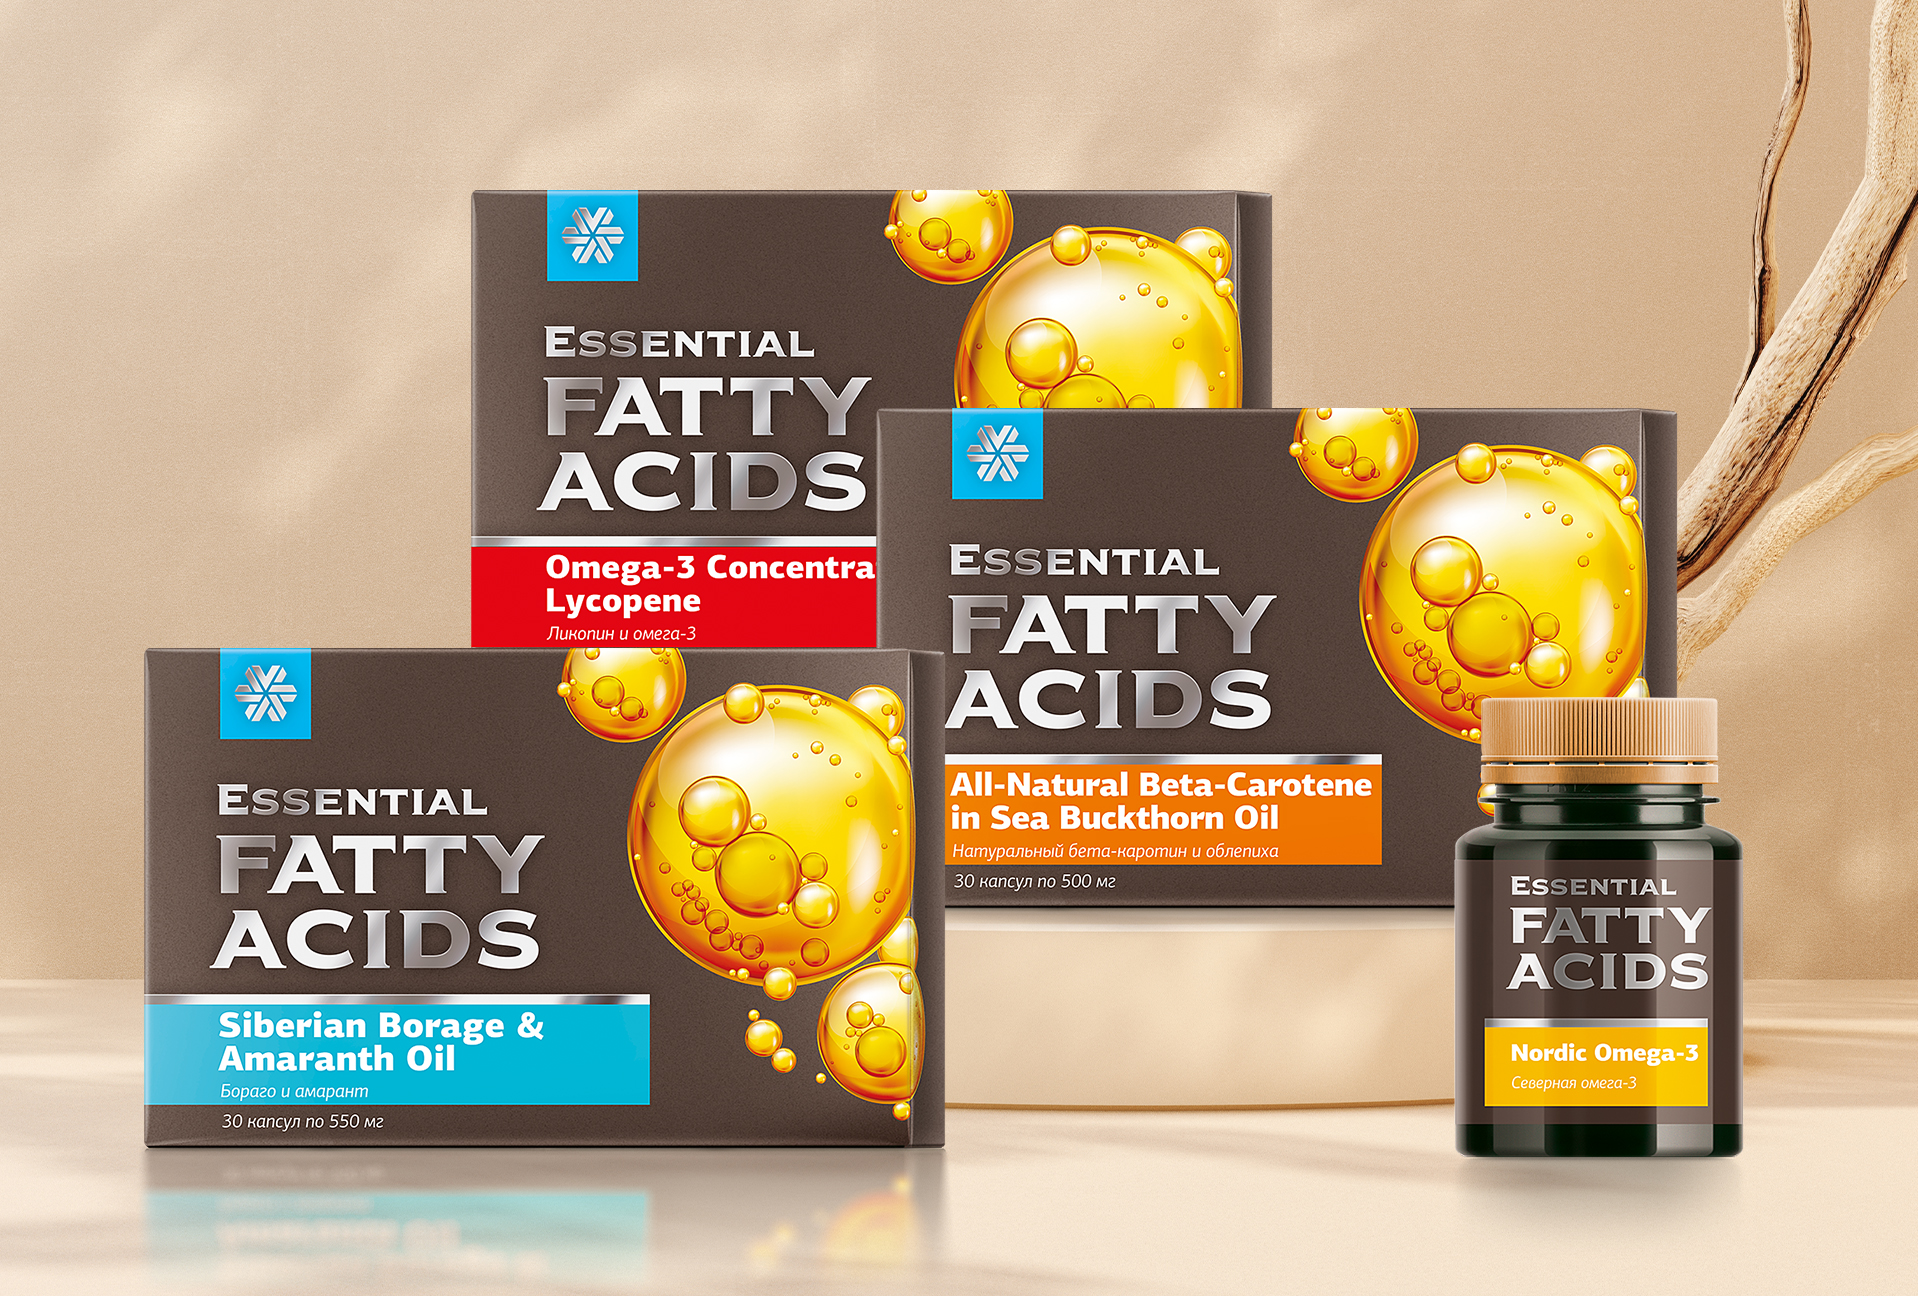 Essential Fatty Acids: ценные липидные комплексы для самого важного!